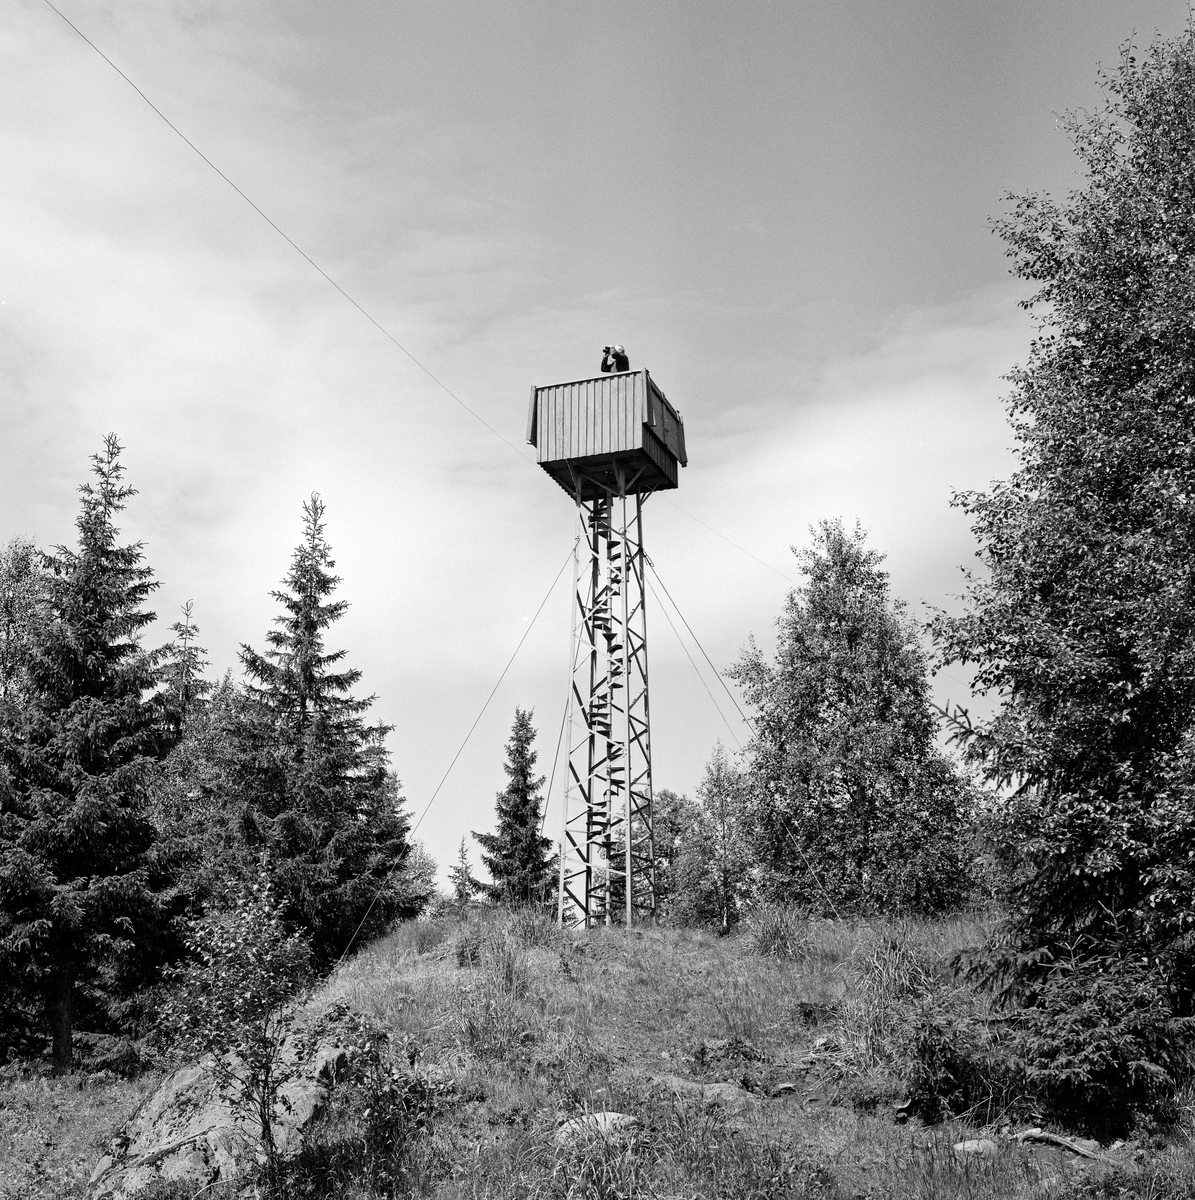 Utsiktstårnet ved brannvaktstasjonen på Flotsberget i Elverum.  Fotografiet viser et smål jerntårn med en kasseformet utsdiktsplattform på toppen, med oppgang via ei innvendig vindelstrapp.  Den forholdsvis smale, høye konstruksjonen ble holdt i posisjon av barduner, jernvaiere som var forankret i fjellet omkring.  Da dette fotografiet ble tatt sto en mann med kikkert oppe i tårnet og speidet ut over det omkringliggende skoglandskapet.  Dette var antakelg skogbrannvakt Nils Granli (1903-1975).  Fløtsberget ligger om lag 560 meter over havet, øst for grenda Melåsberget i søndre del av Elverum kommune.  Den første skogbrannvaktstasjonen her ble etablert av lokale skogeiere i 1904.  Forsikringsselskapet «Skogbrand» trådte støttende til da anlegget ble modernisert i 1933.  Elverum kommune var eier da vaktholdet på Flotsberget ble avviklet etter 1973-sesongen.  Kommuneingeniøren foreslo da at peileapparatet, kikkertene og kartene som hadde tilhørt anlegget skulle overdras til Norsk Skogbruksmuseum.  Sjølve hytta er seinere gjort tilgjengelig for allmennheten som kvilested for folk bruker omkringliggende terreng i rekreasjonssammenheng. Branntårn.